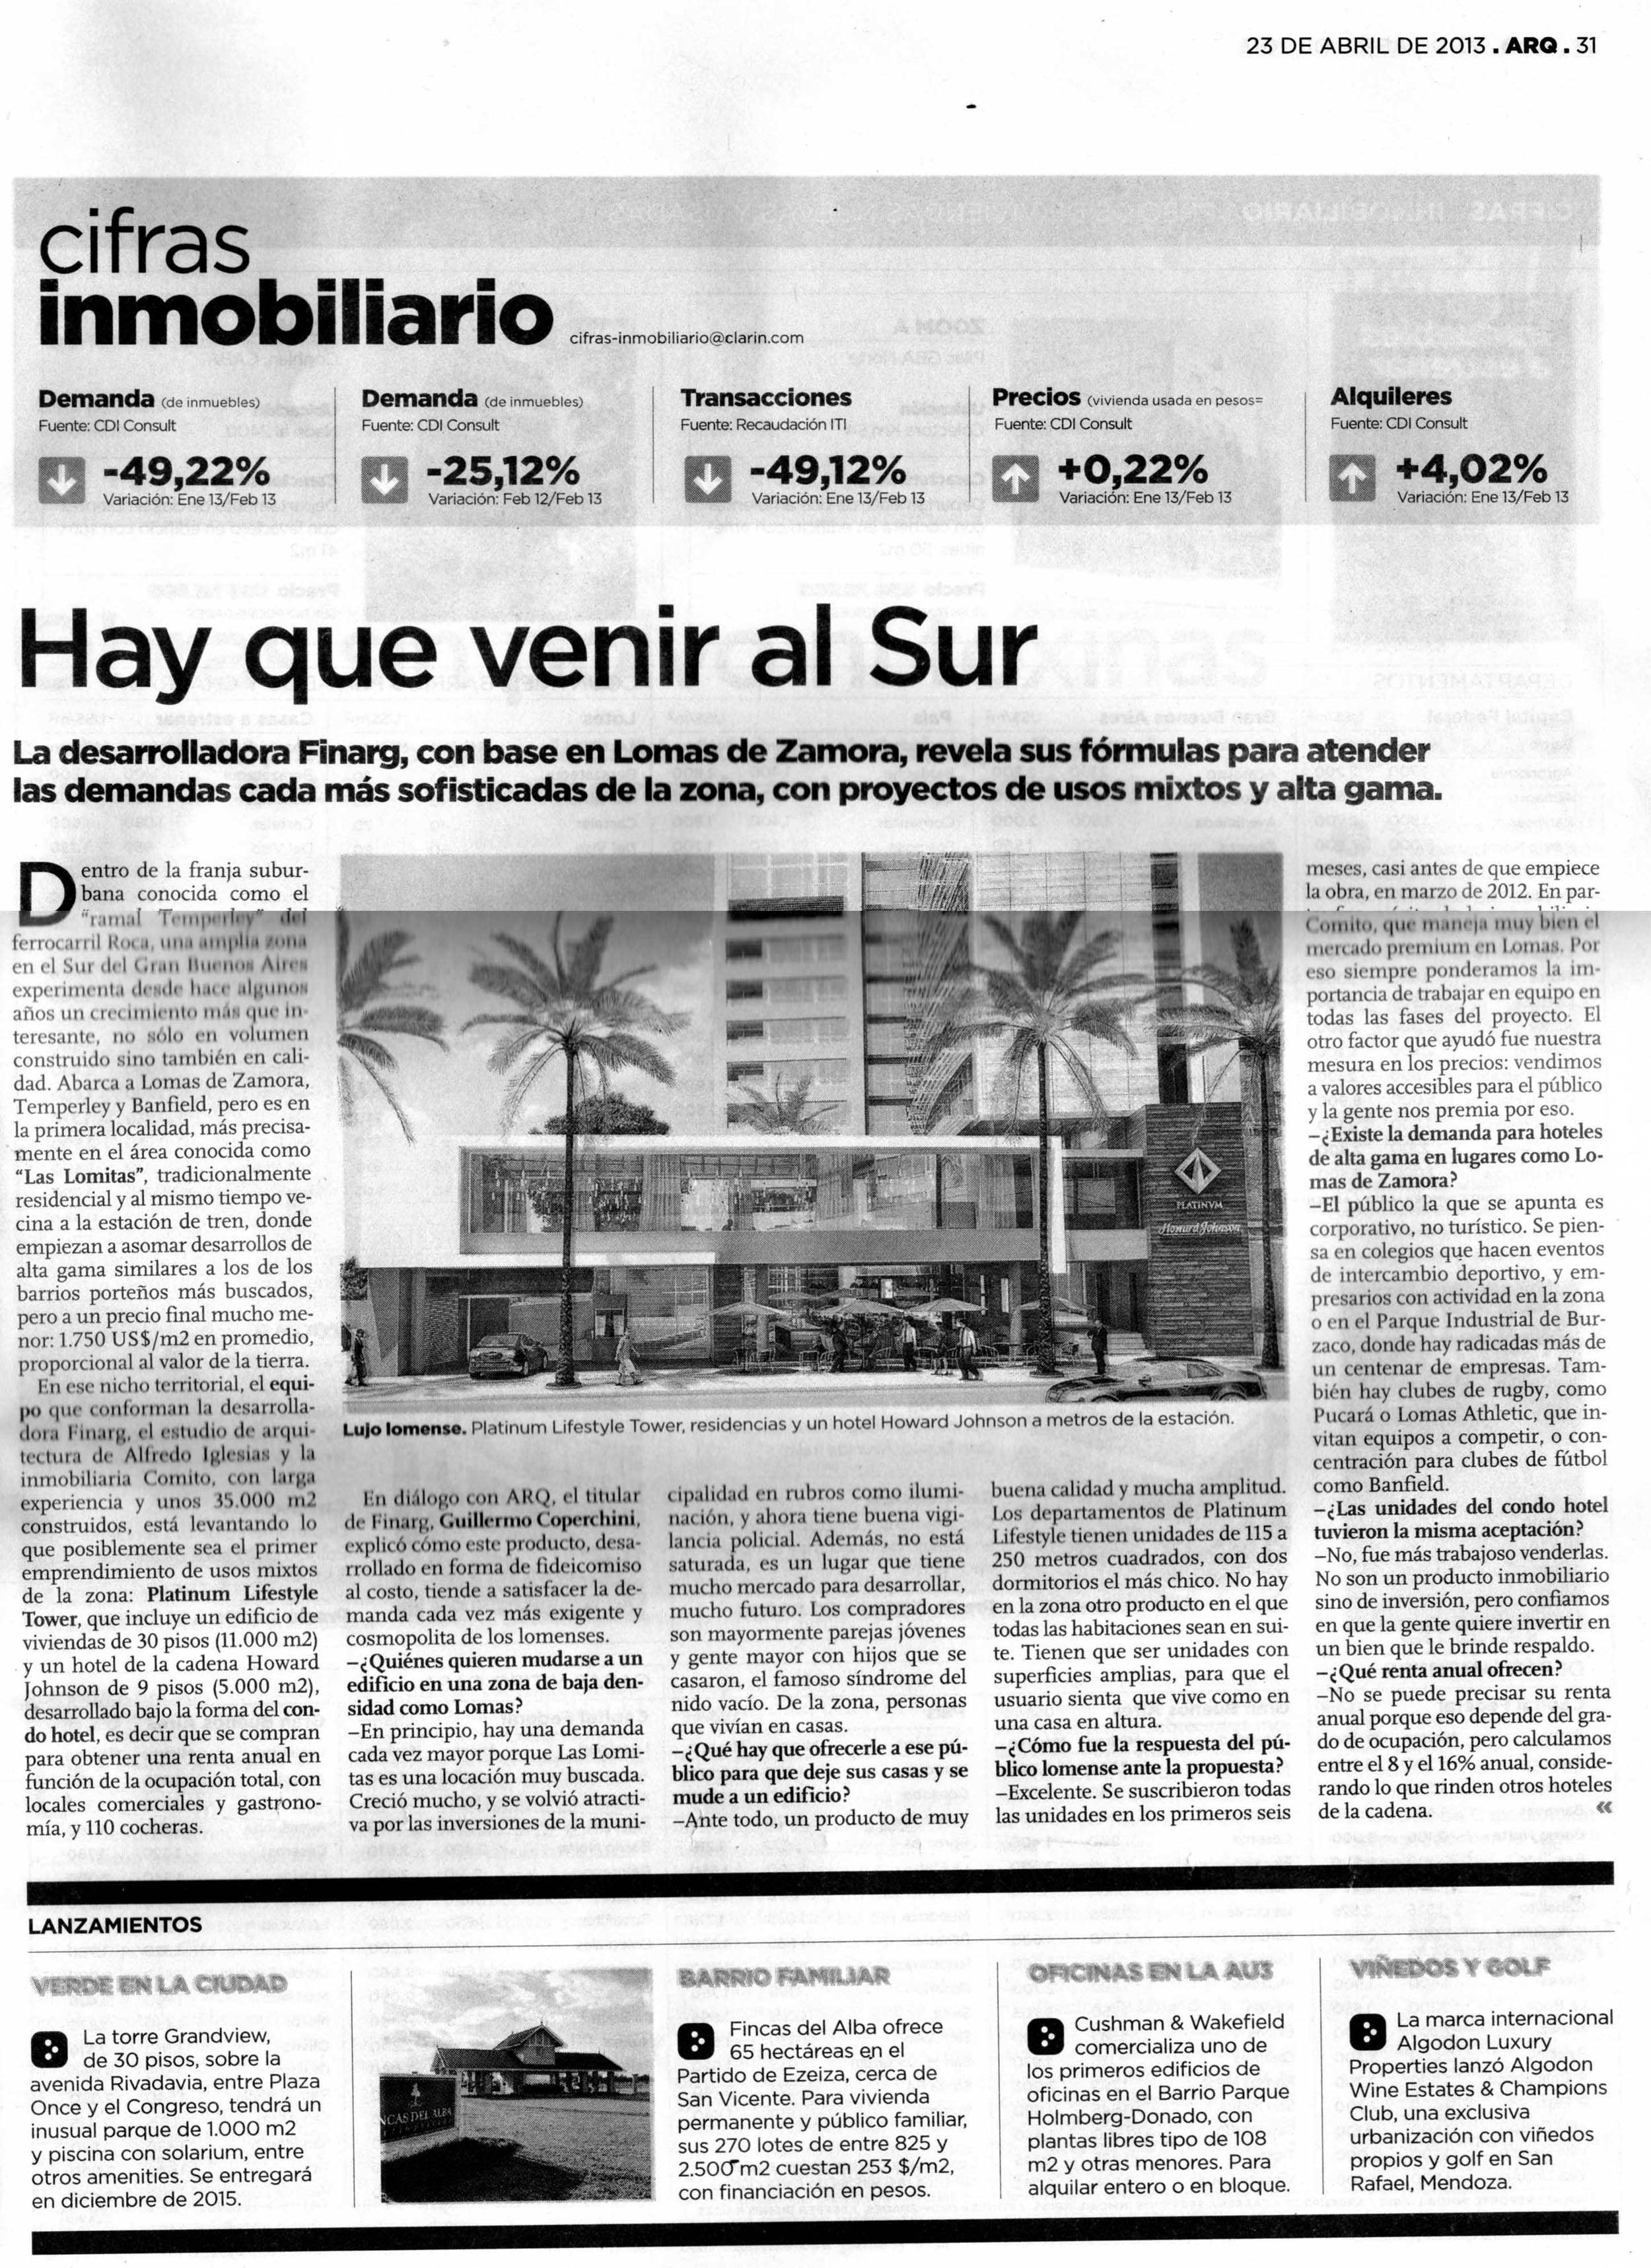 Diario de Arquitectura, Clarín, 23 de abril